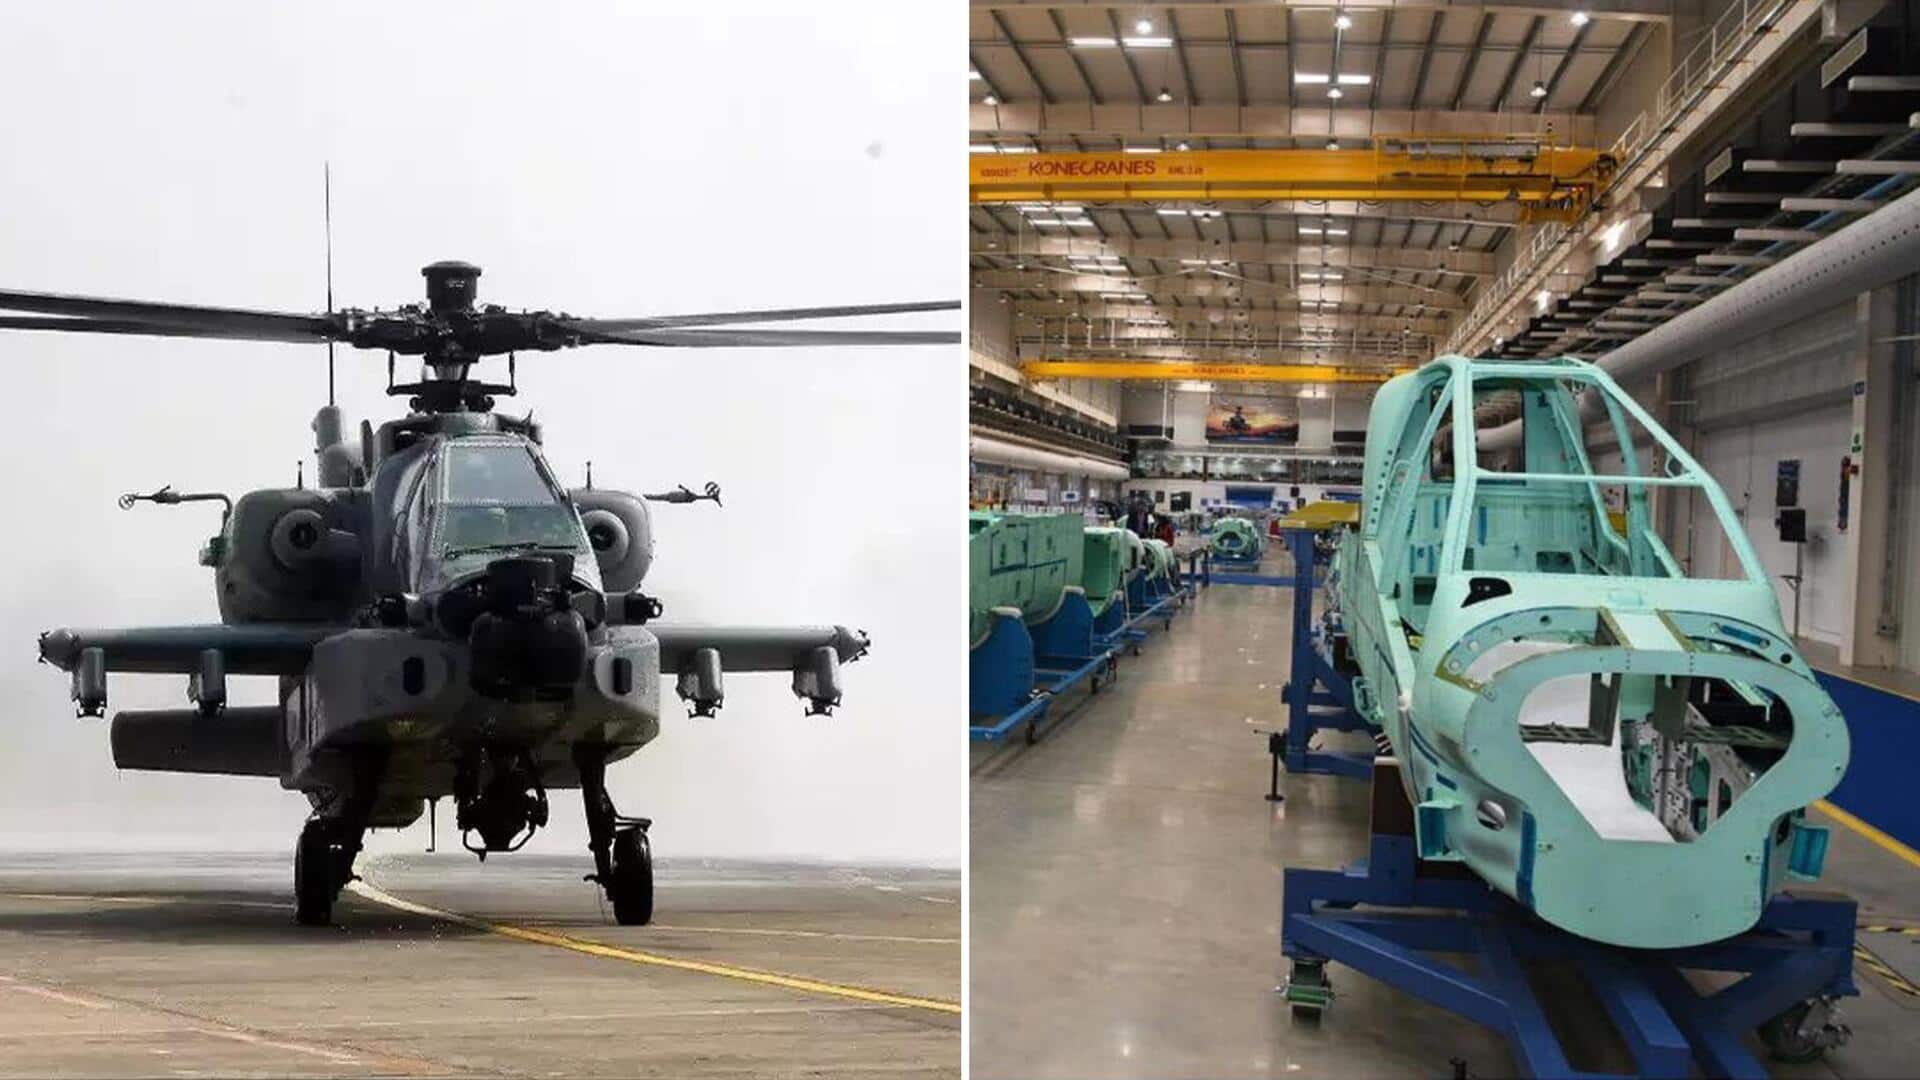 भारतीय सेना को जल्द मिलेंगे अपाचे लड़ाकू हेलीकॉप्टर, अमेरिकी कंपनी बोइंग ने शुरू किया उत्पादन